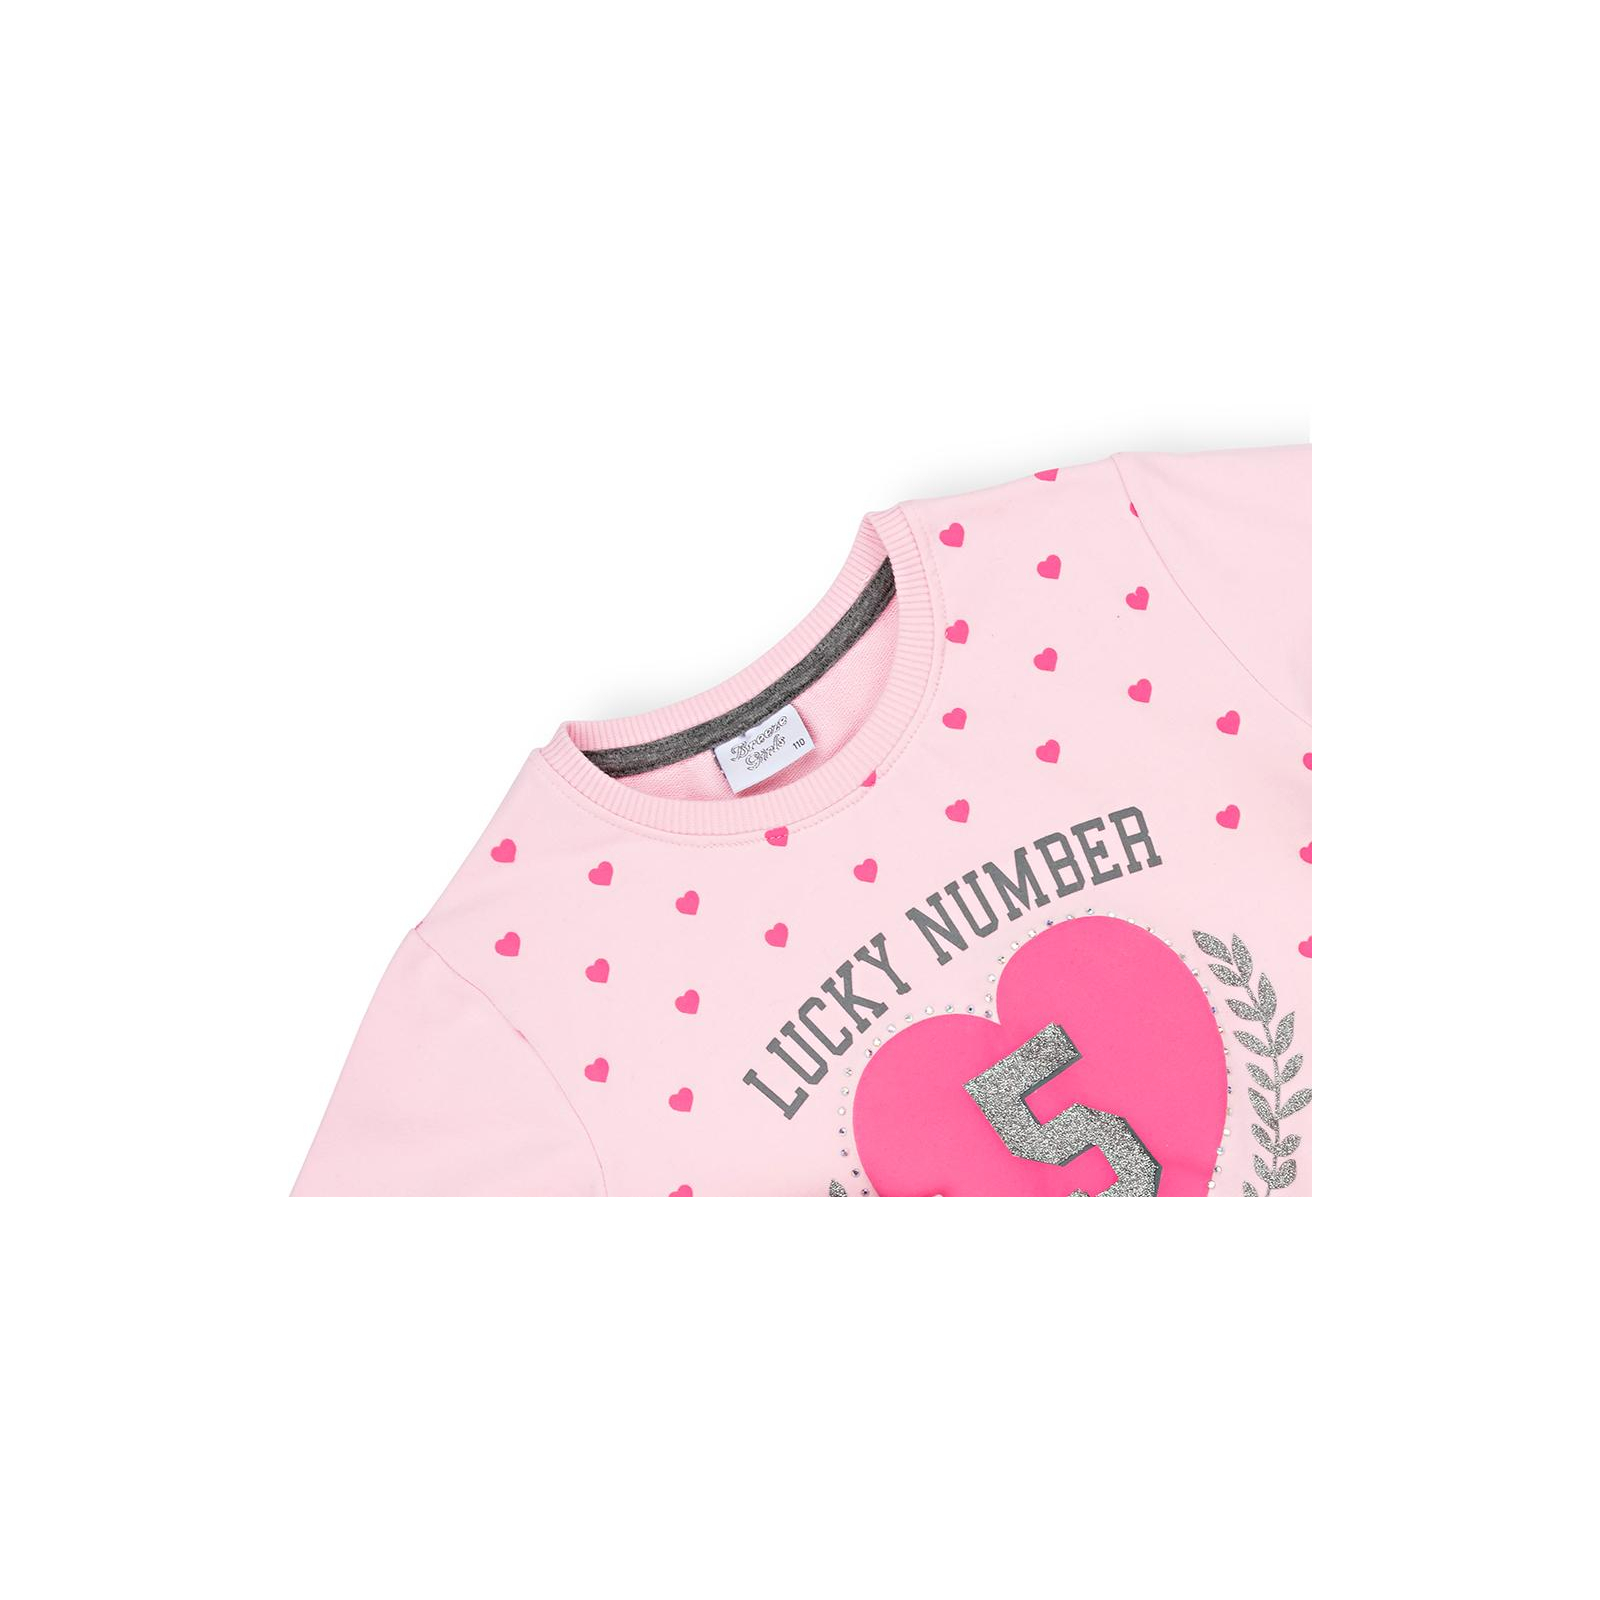 Спортивный костюм Breeze с сердцем (9347-116G-pink) изображение 7